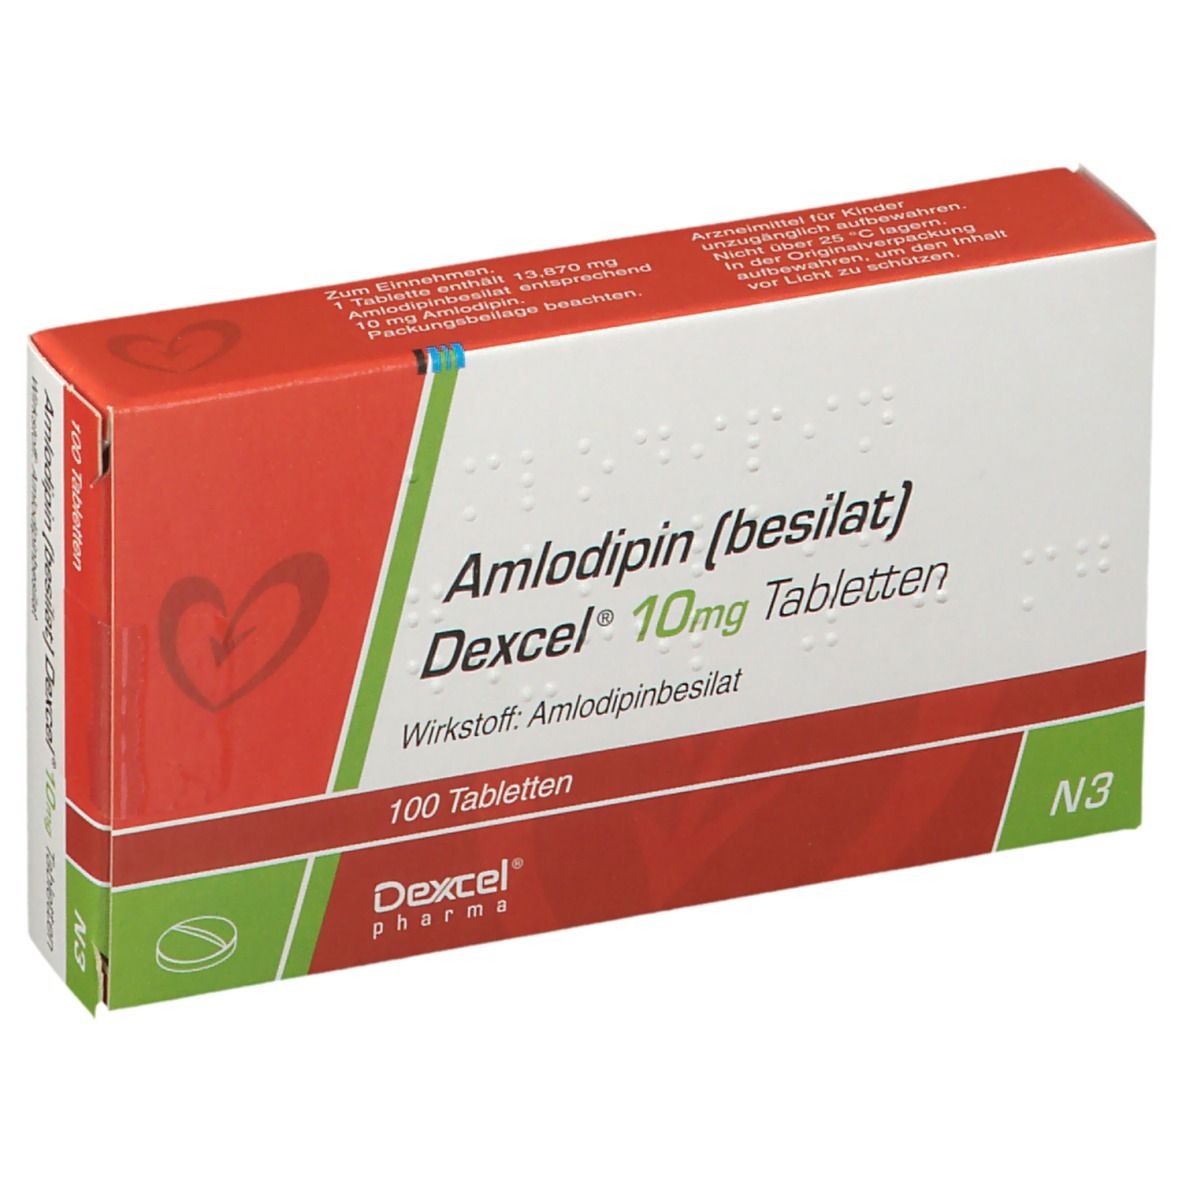 Купить амлодипин 10 мг. Amlodipin(besilat) Dexcel 5mg немецкого производства. Амлодипин 10. Амлодипин 10 мг. Амлодипин 1 мг.